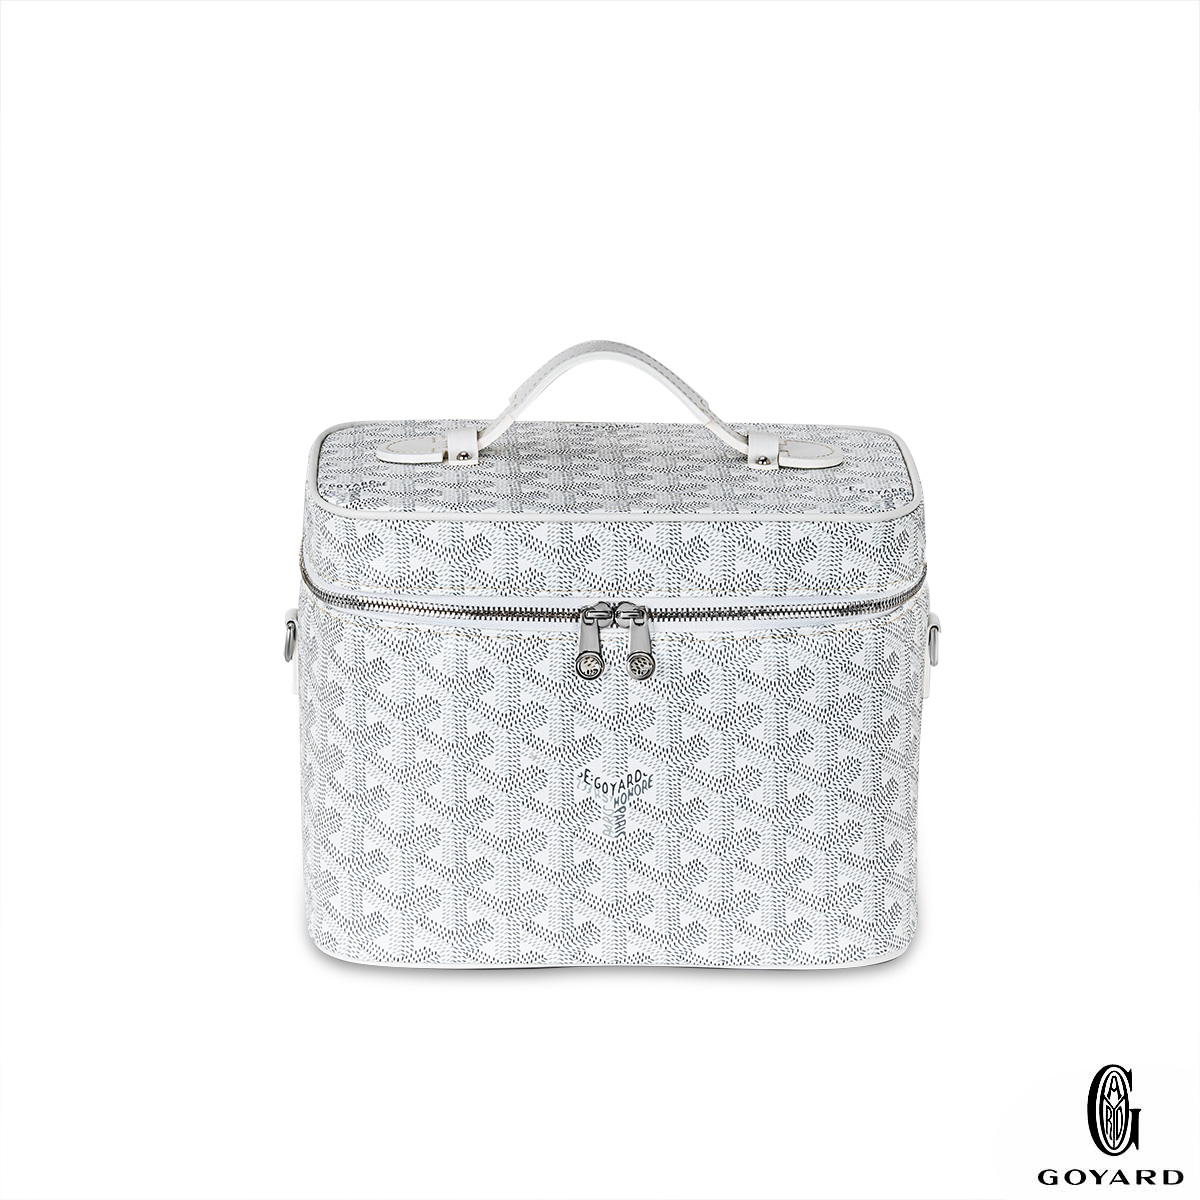 Handbags Goyard Goyard White Goyardine Muse Vanity Case